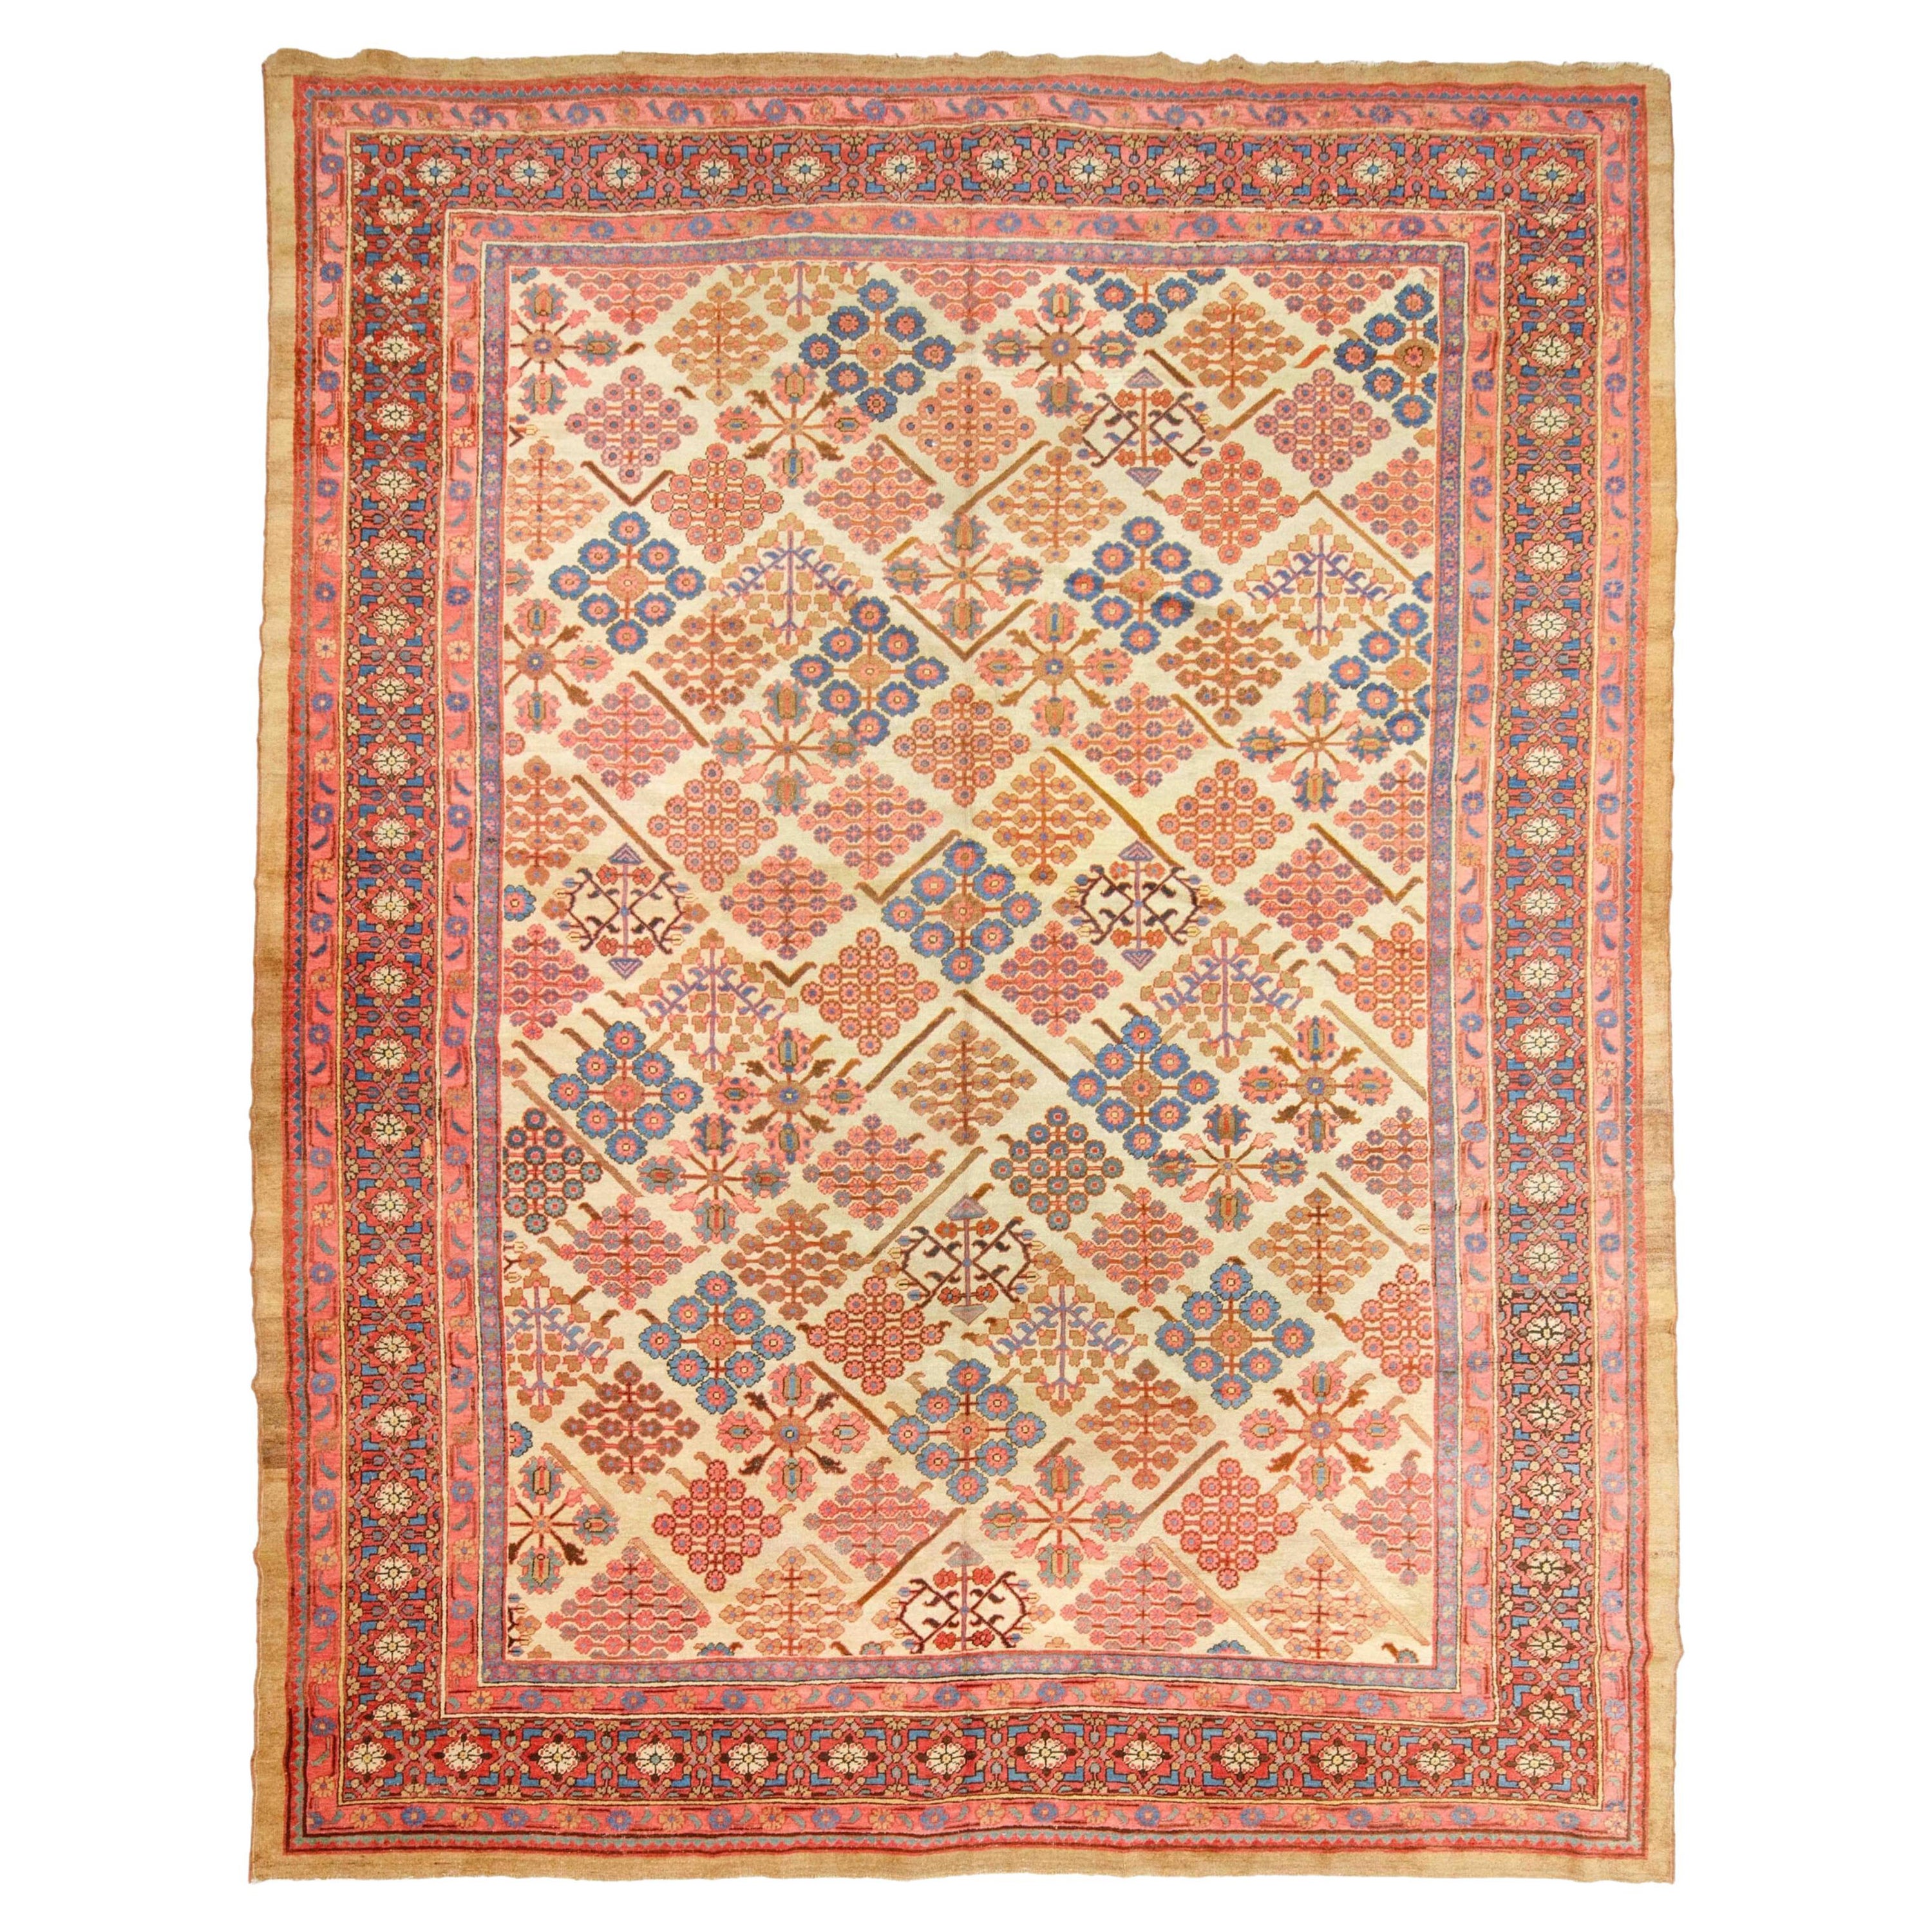 Antiker Bakshaish-Teppich - Bakshaish-Teppich aus dem späten 19. Jahrhundert, antiker Teppich